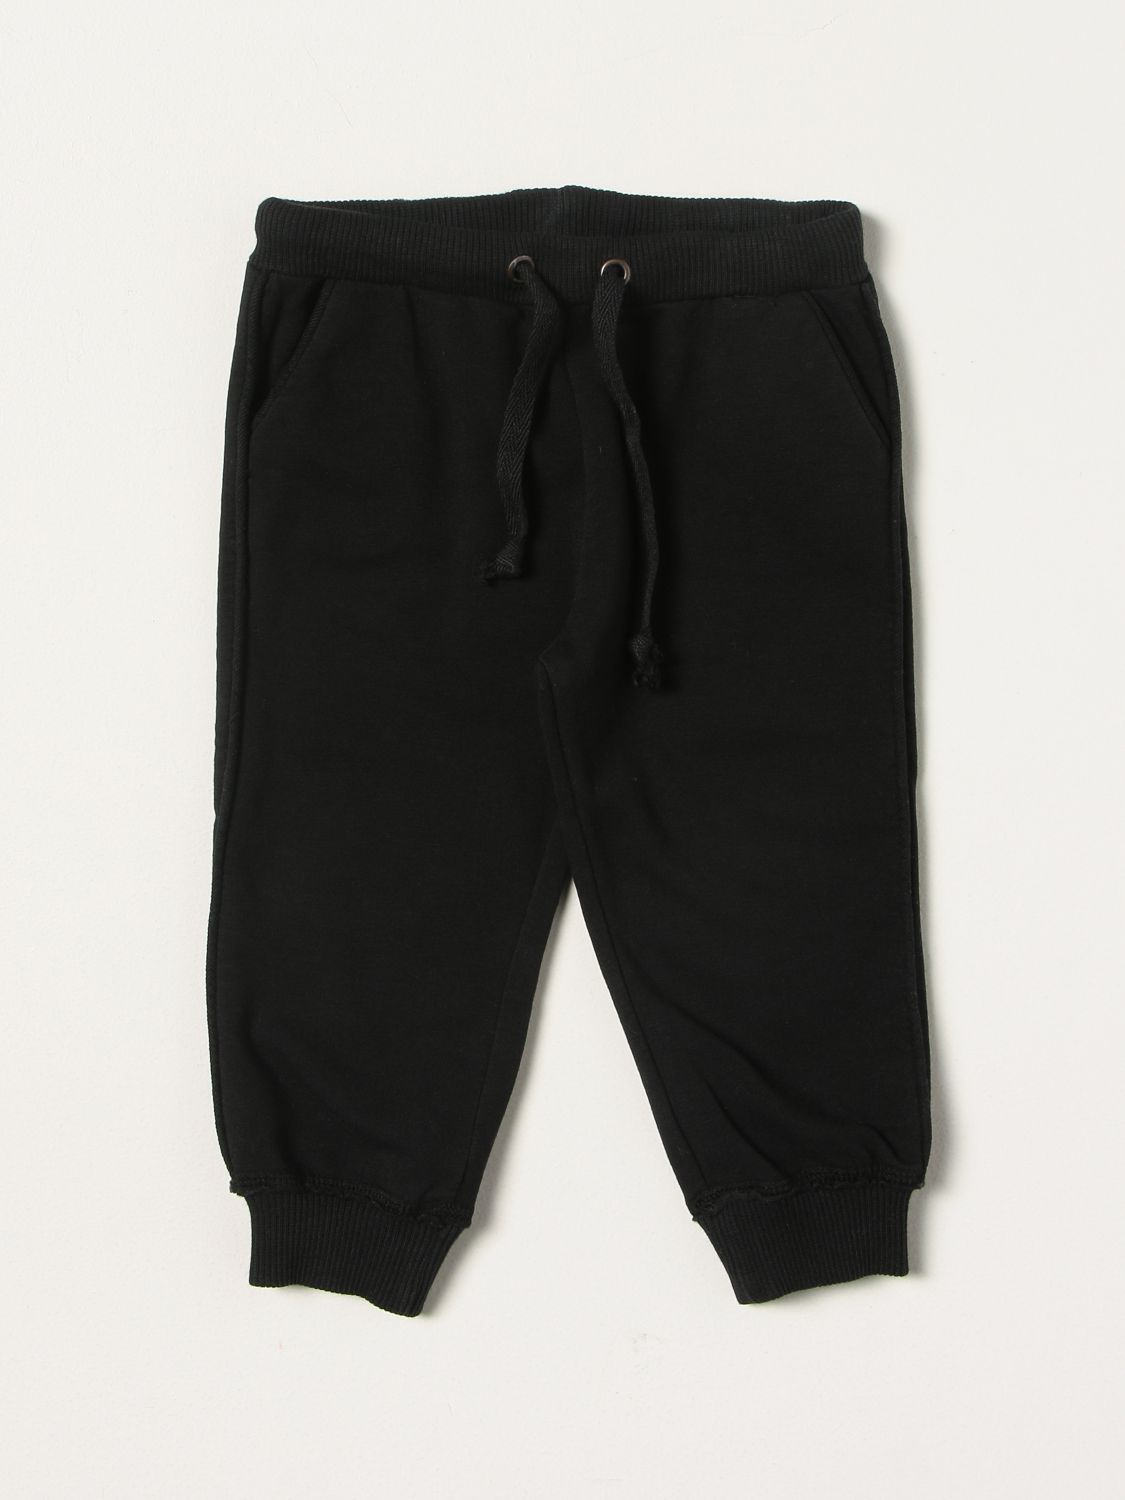 ZHOE & TOBIAH: pants for boys - Black | Zhoe & Tobiah pants CFL6 online ...